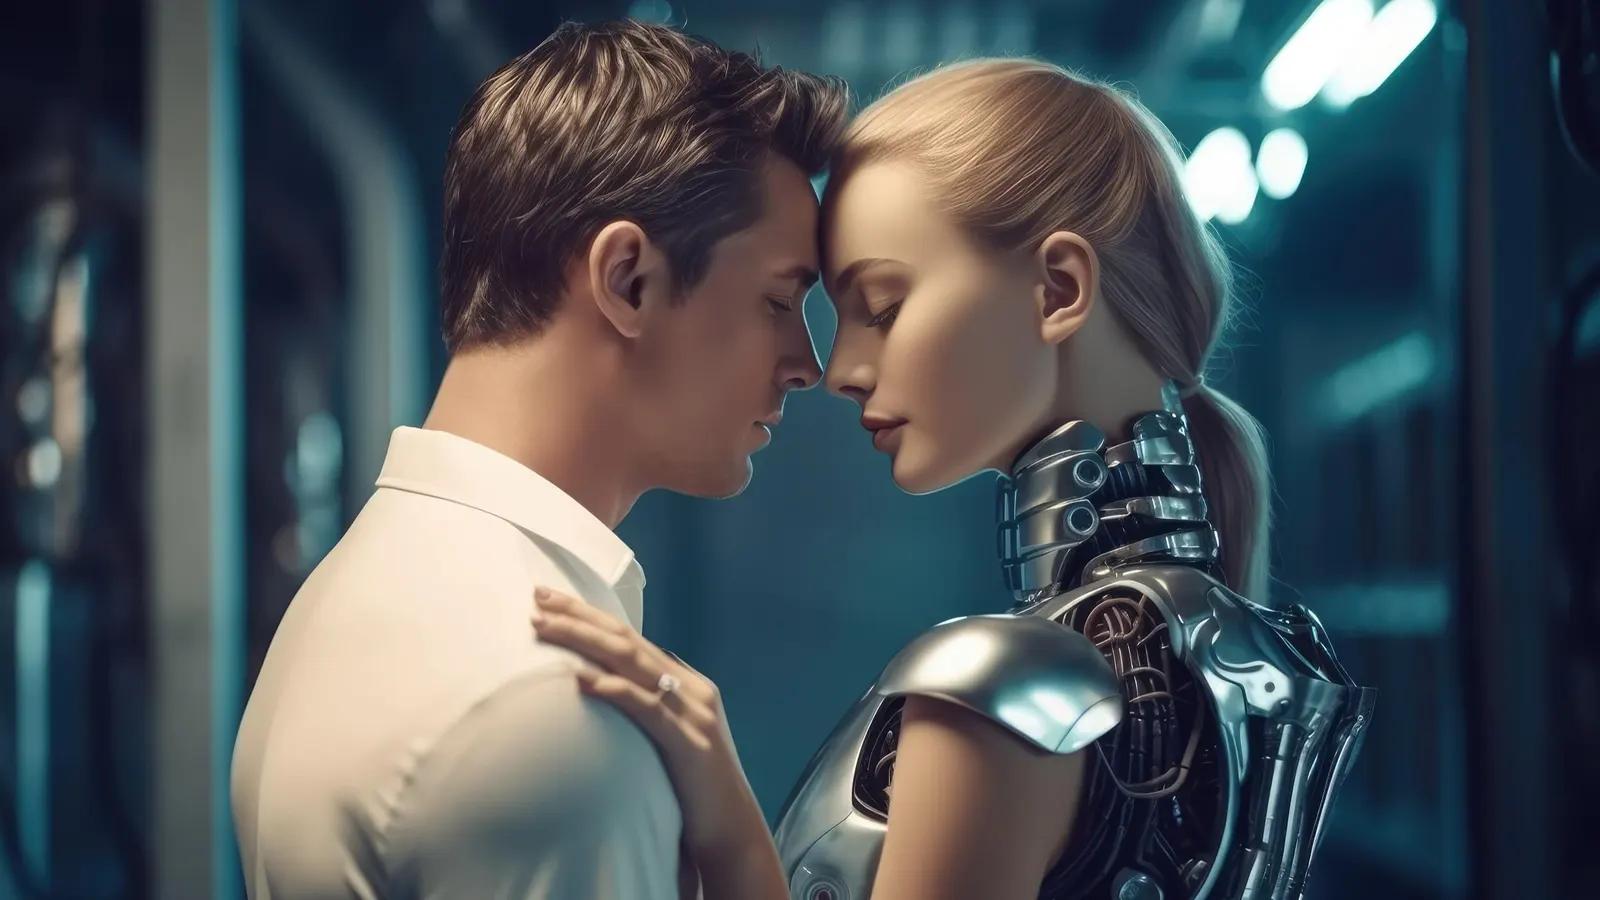 como crear mujeres con inteligencia artificial - Puedo hacer una novia AI